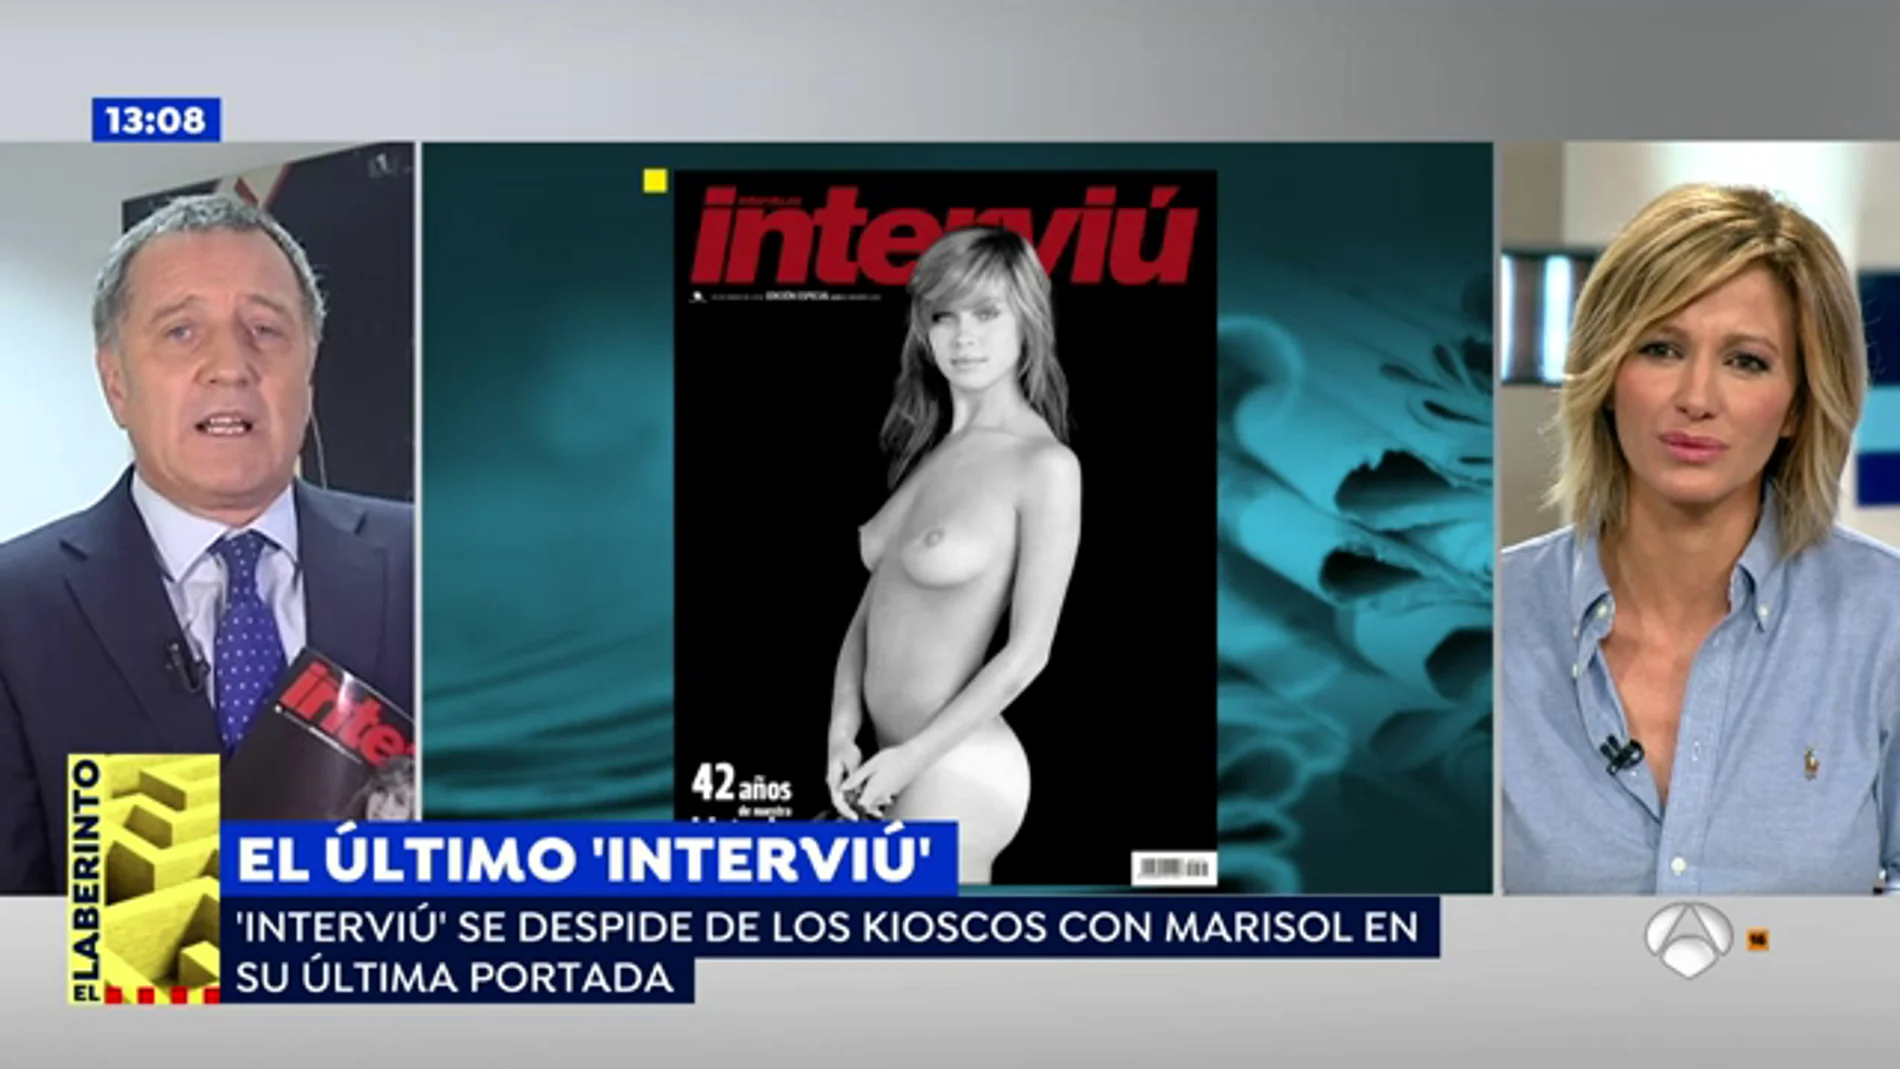 El director de 'Interviú' se despide recuperando el desnudo de Marisol: "Ella representa la vida entera de esta revista"